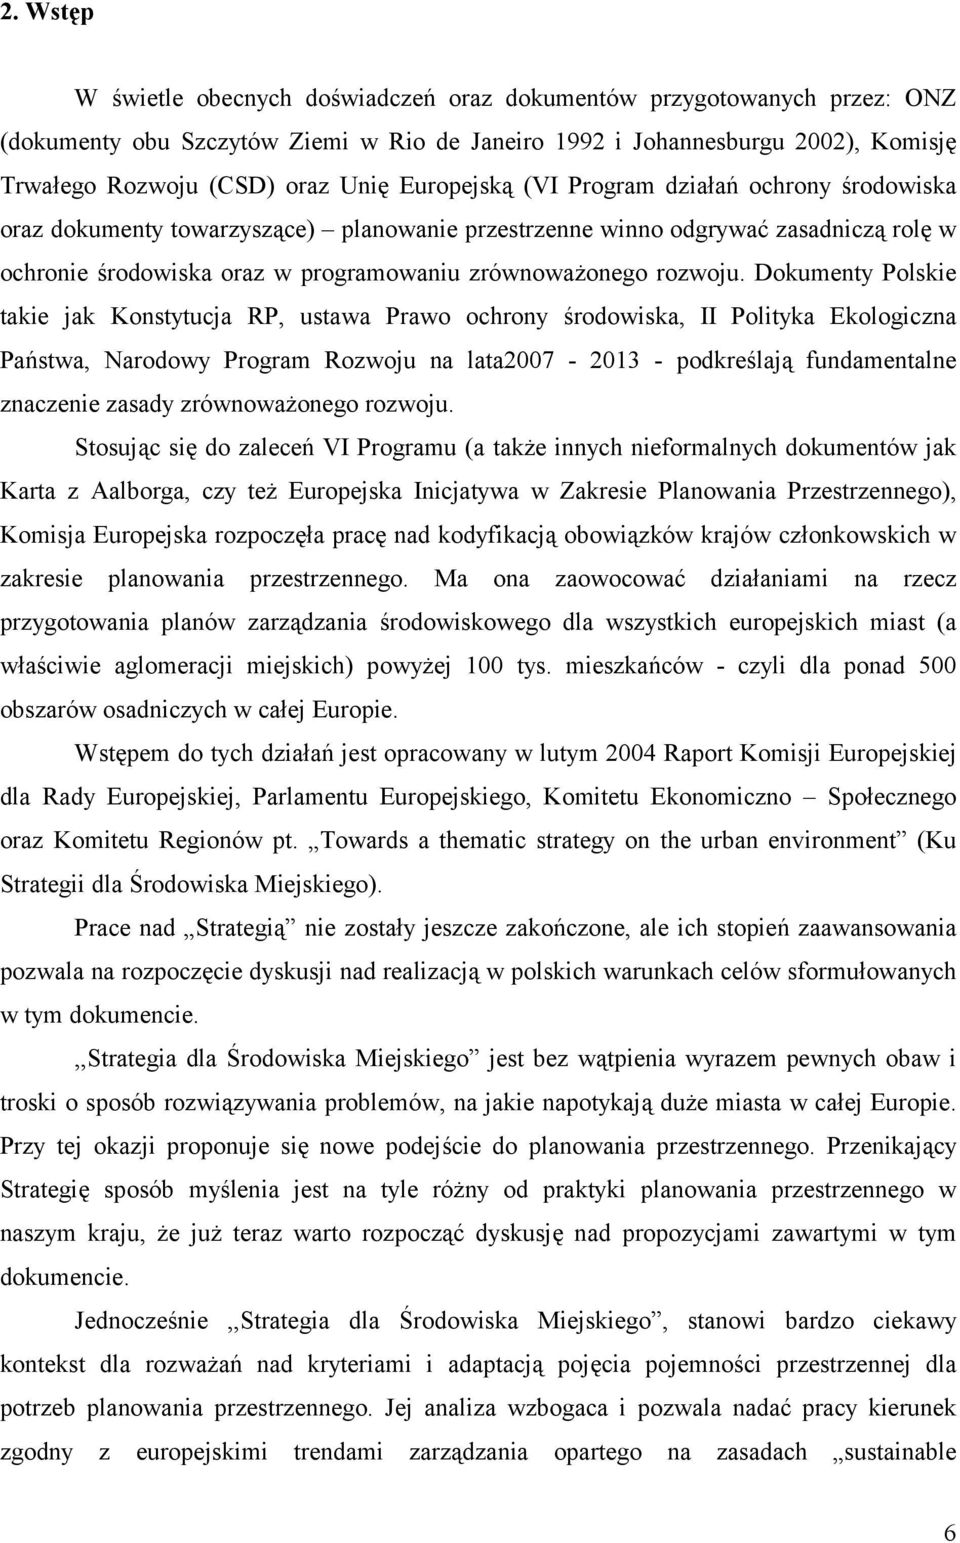 Dokumenty Polskie takie jak Konstytucja RP, ustawa Prawo ochrony środowiska, II Polityka Ekologiczna Państwa, Narodowy Program Rozwoju na lata2007-2013 - podkreślają fundamentalne znaczenie zasady